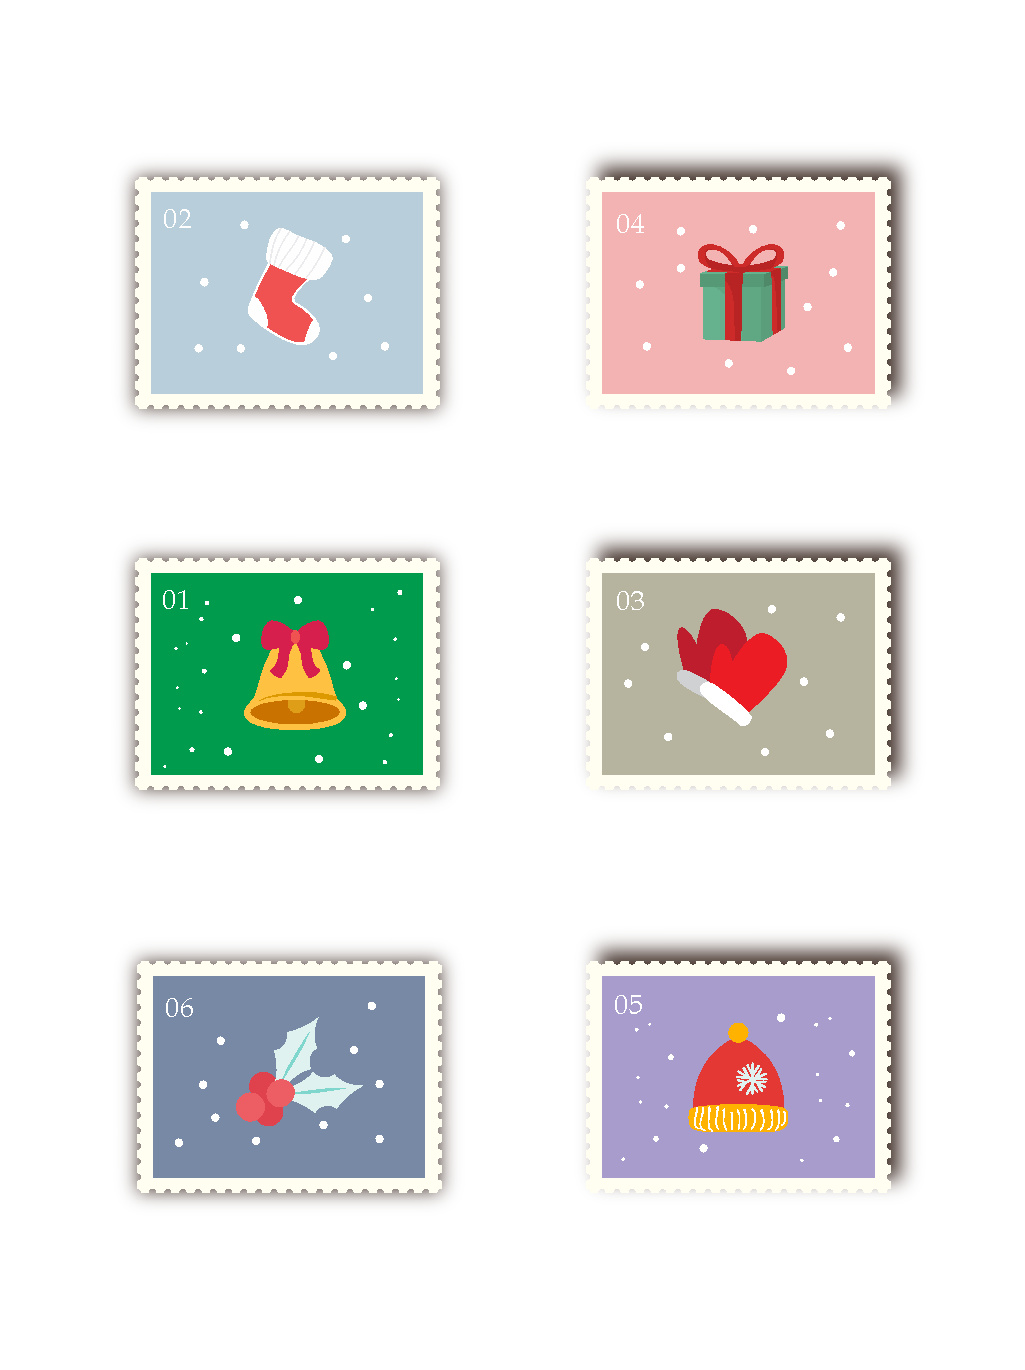 卡通圣诞邮票贴纸可商用图片